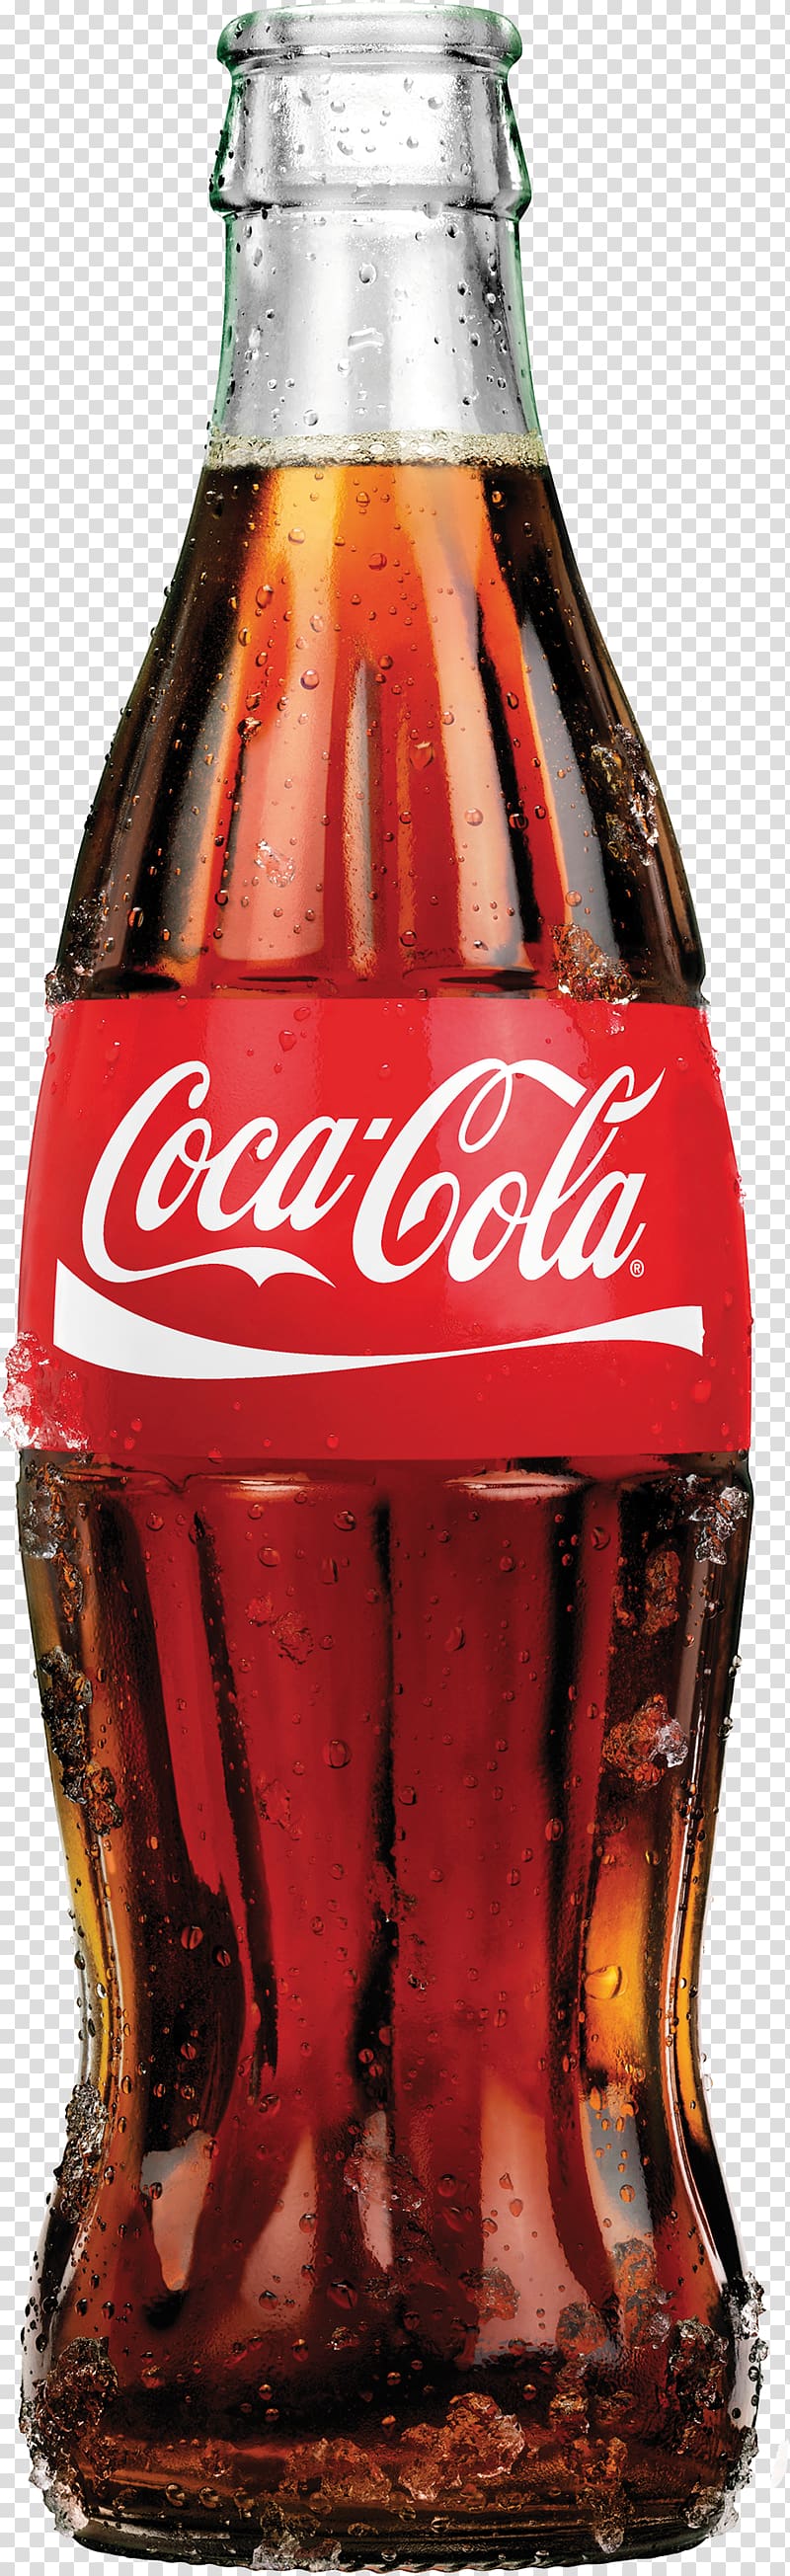 Coca-Cola bottle, Coca-Cola Cherry Fizzy Drinks Diet Coke, Coca Cola Flasche transparent background PNG clipart